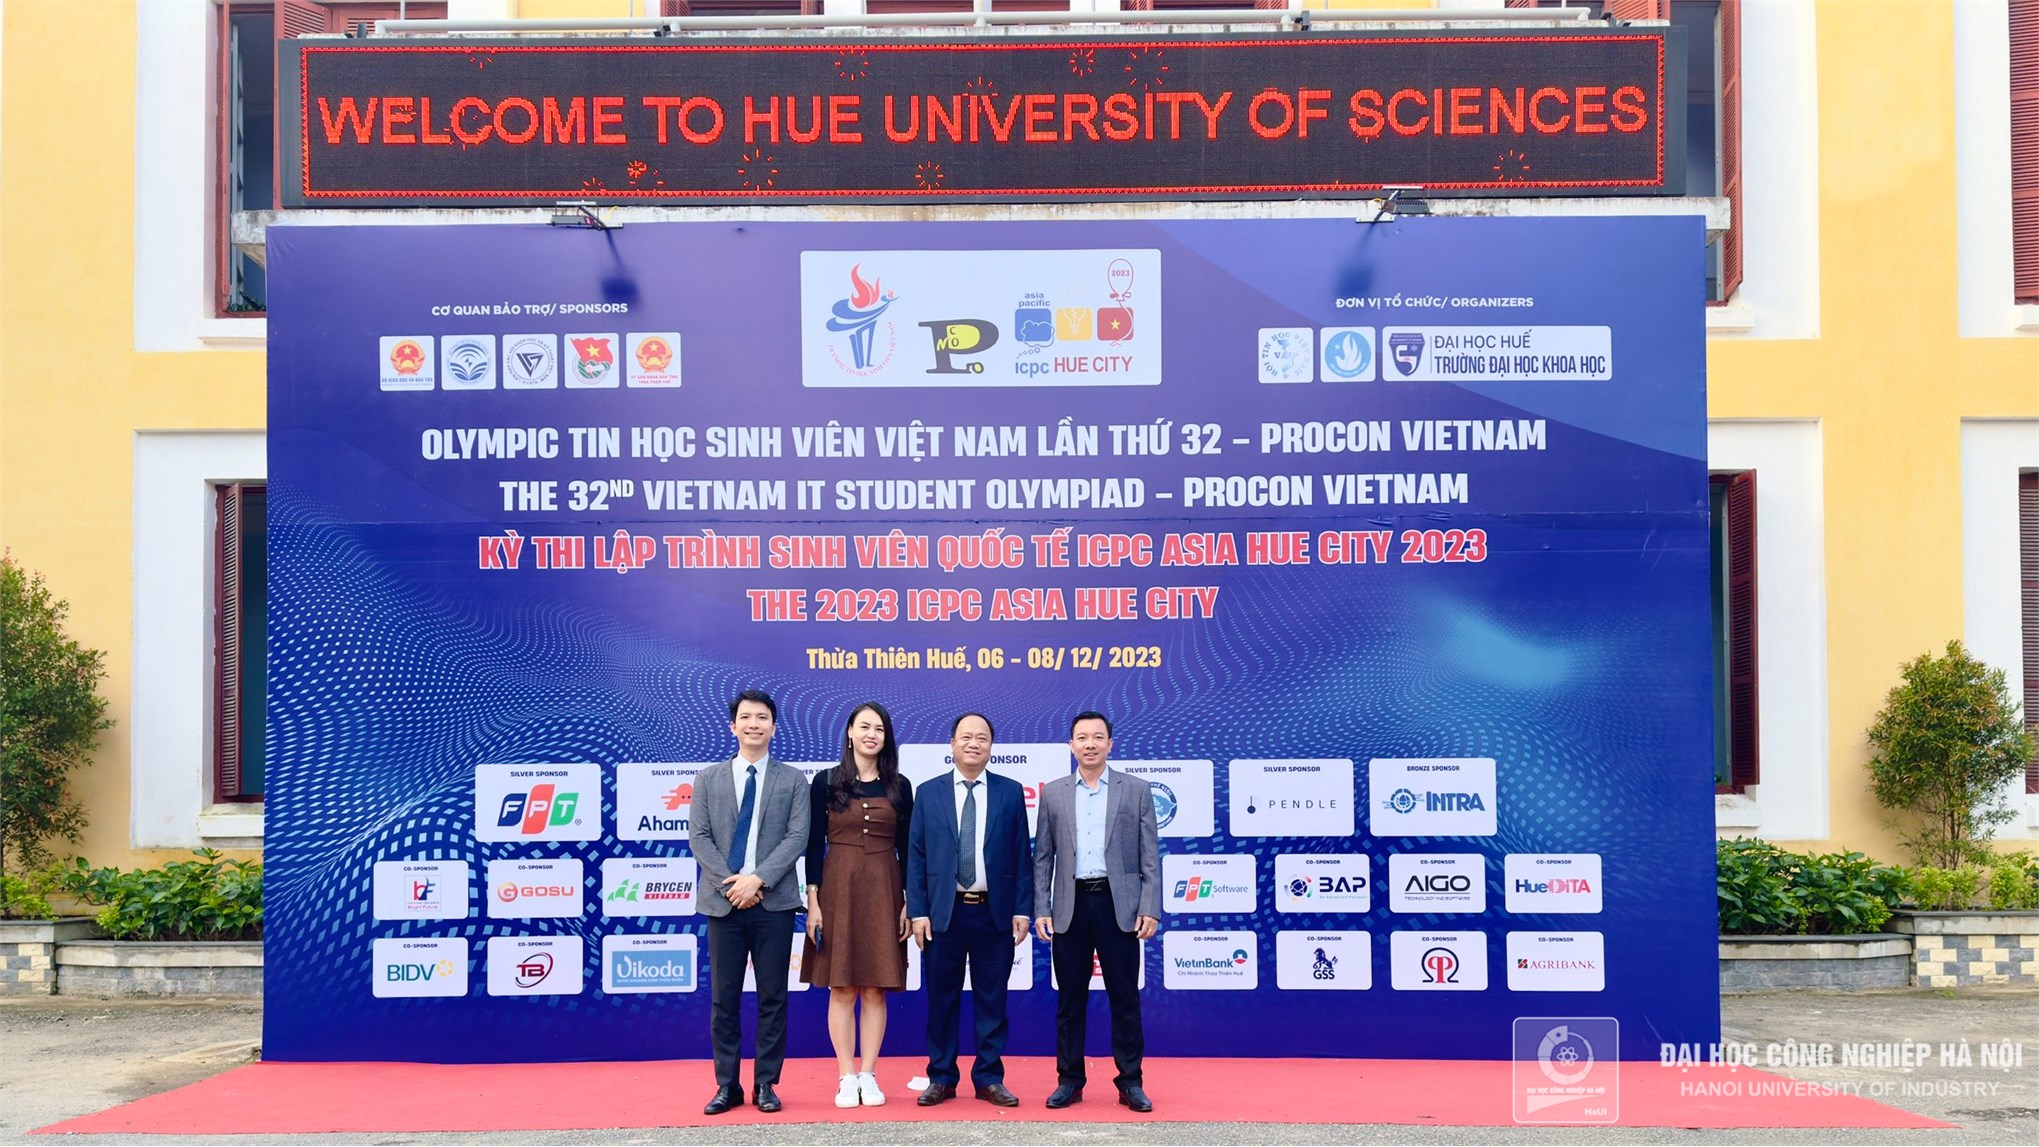 HaUI ghi dấu ấn tại Olympic Tin học Sinh viên Việt Nam lần thứ 32, Procon và Kỳ thi lập trình sinh viên quốc tế ICPC Asia